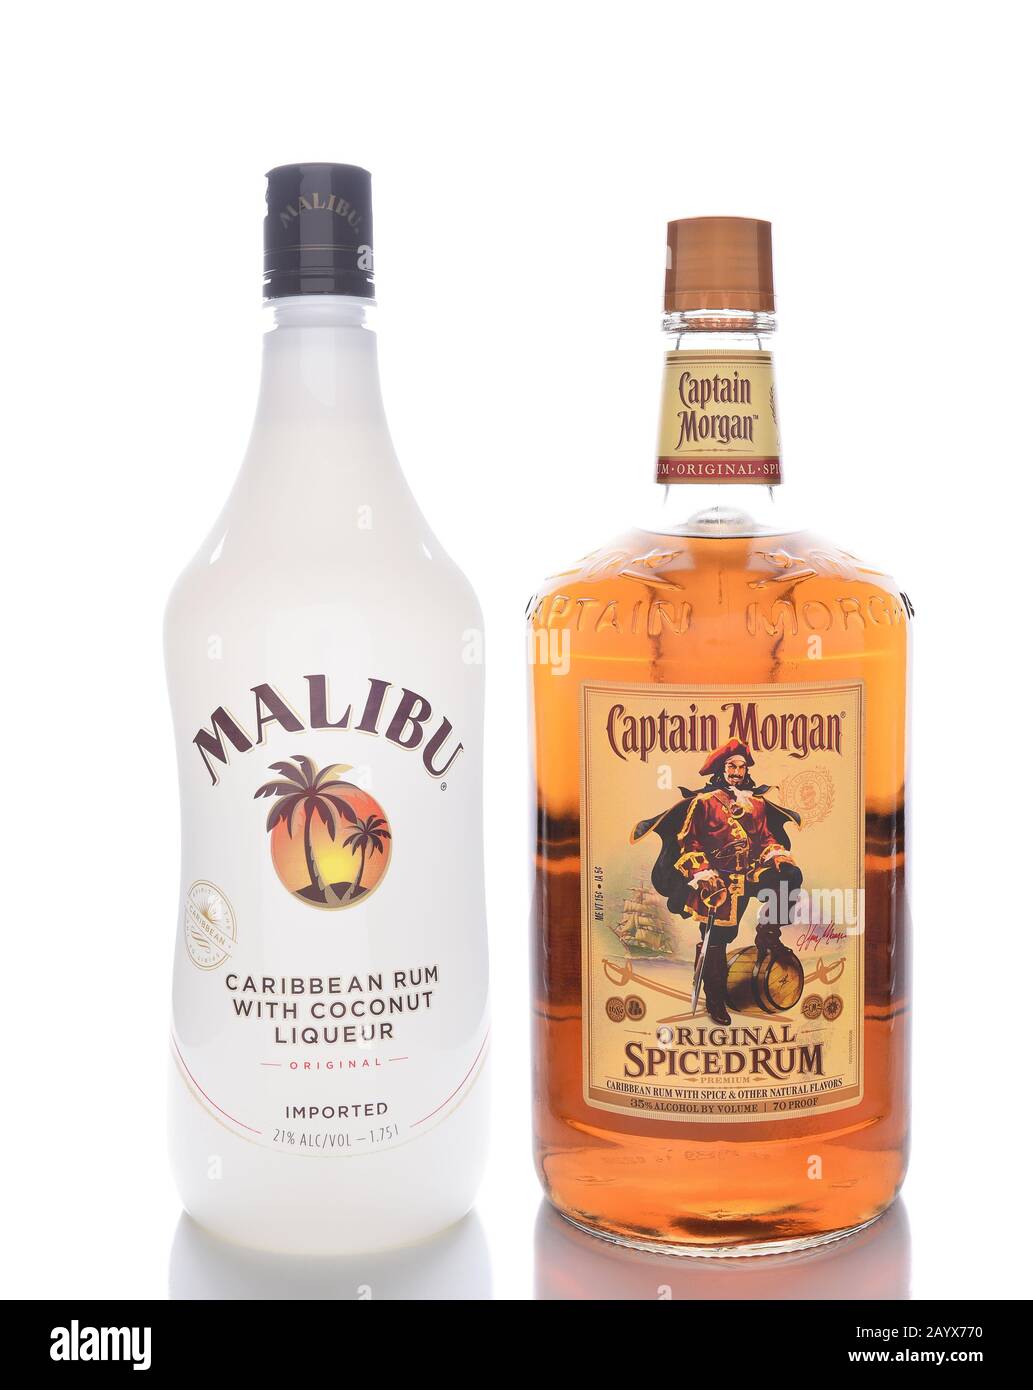 Irvine, KALIFORNIEN - 13. JANUAR 2017: Malibu und Kapitän Morgan Spiced Rum. Zwei der beliebtesten aromatisierten Rums der Welt. Stockfoto